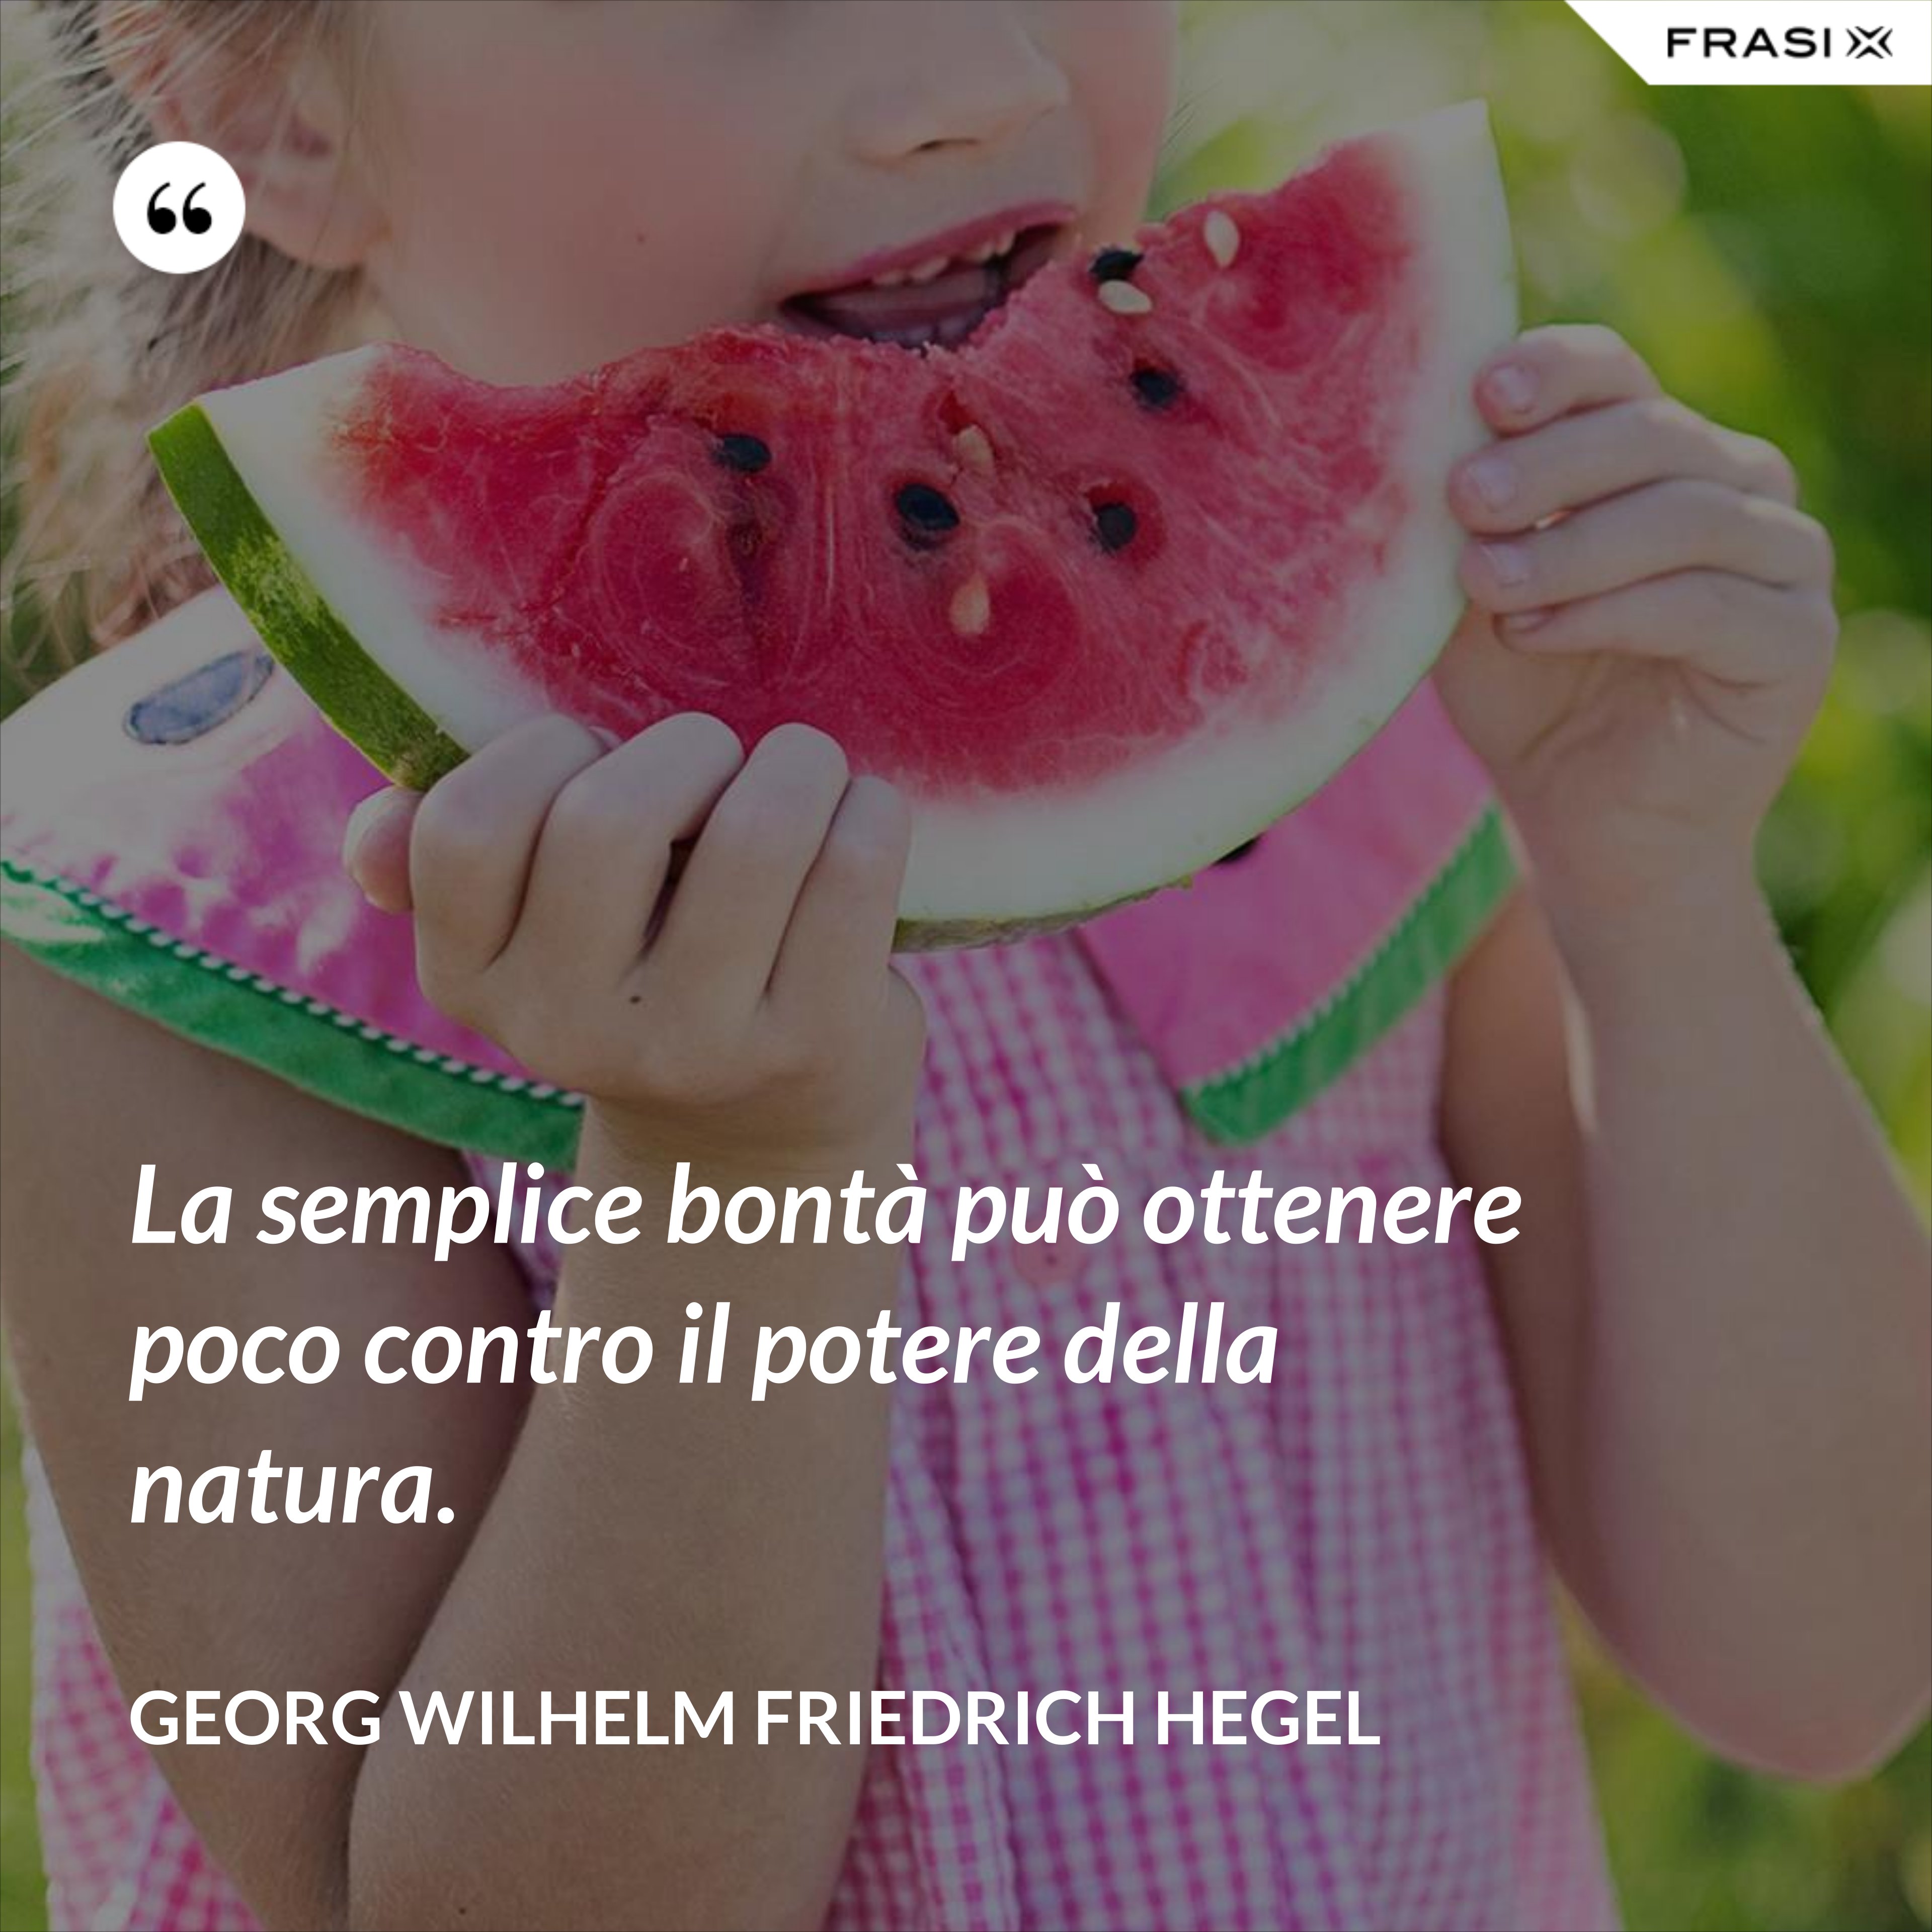 La semplice bontà può ottenere poco contro il potere della natura. - Georg Wilhelm Friedrich Hegel